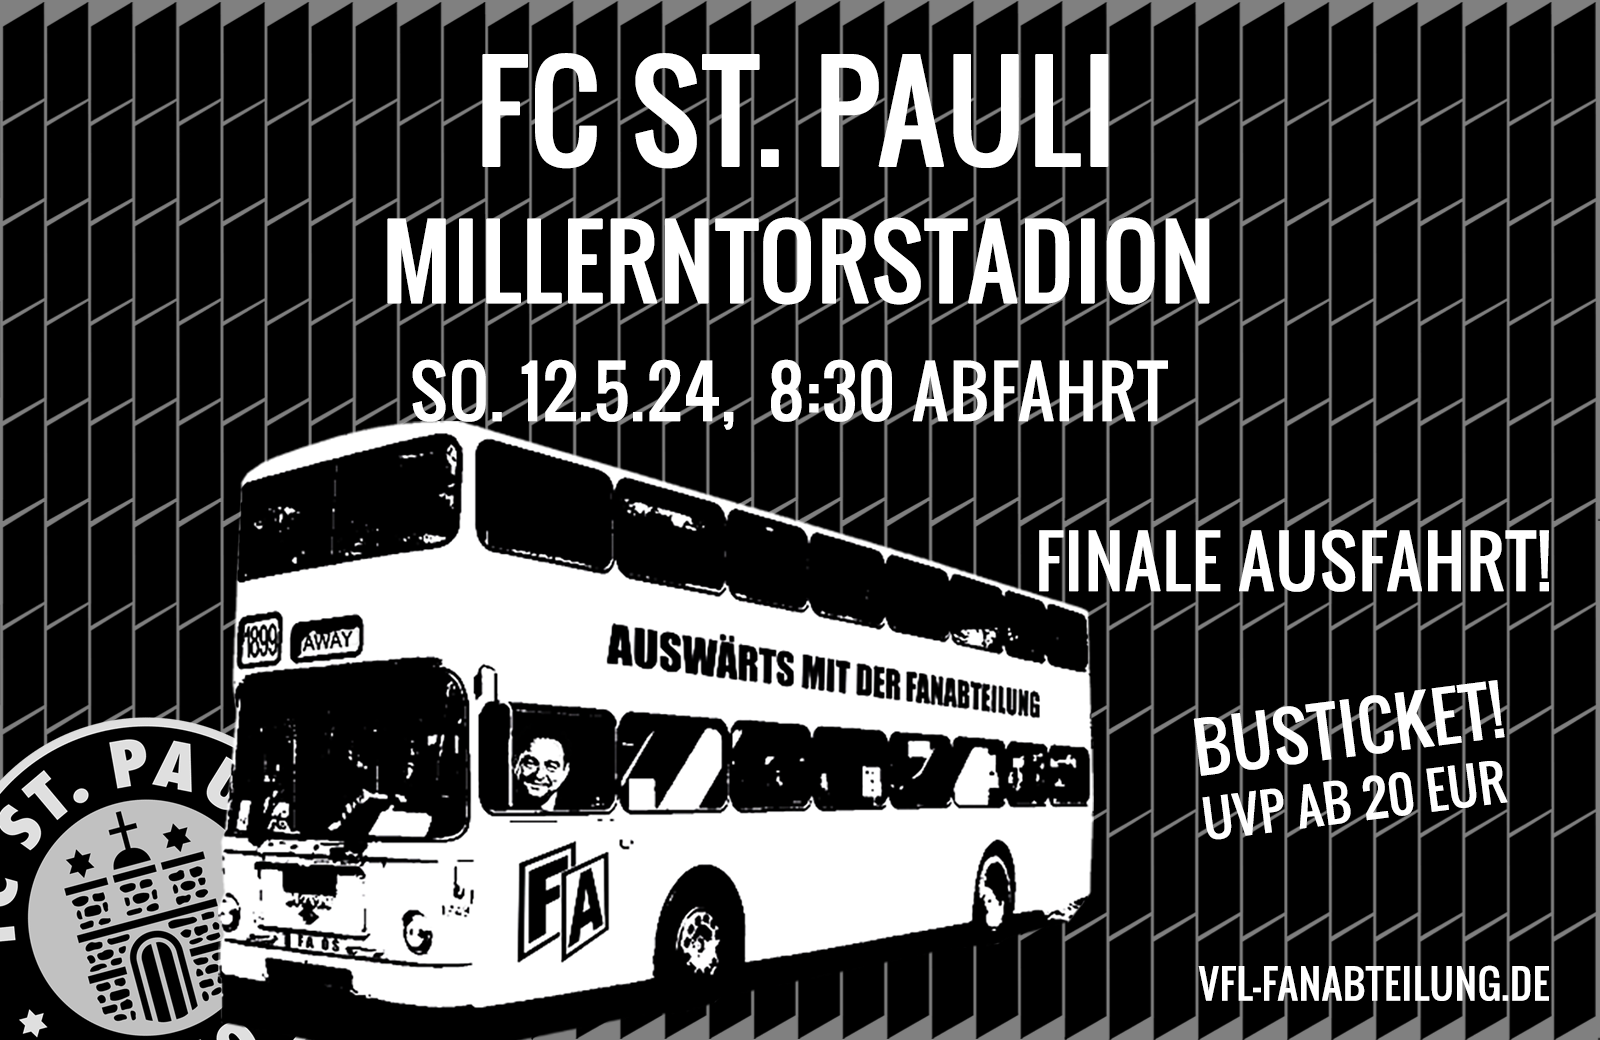 Mit der FA zu St. Pauli 2.0 (nur BUSFAHRT)